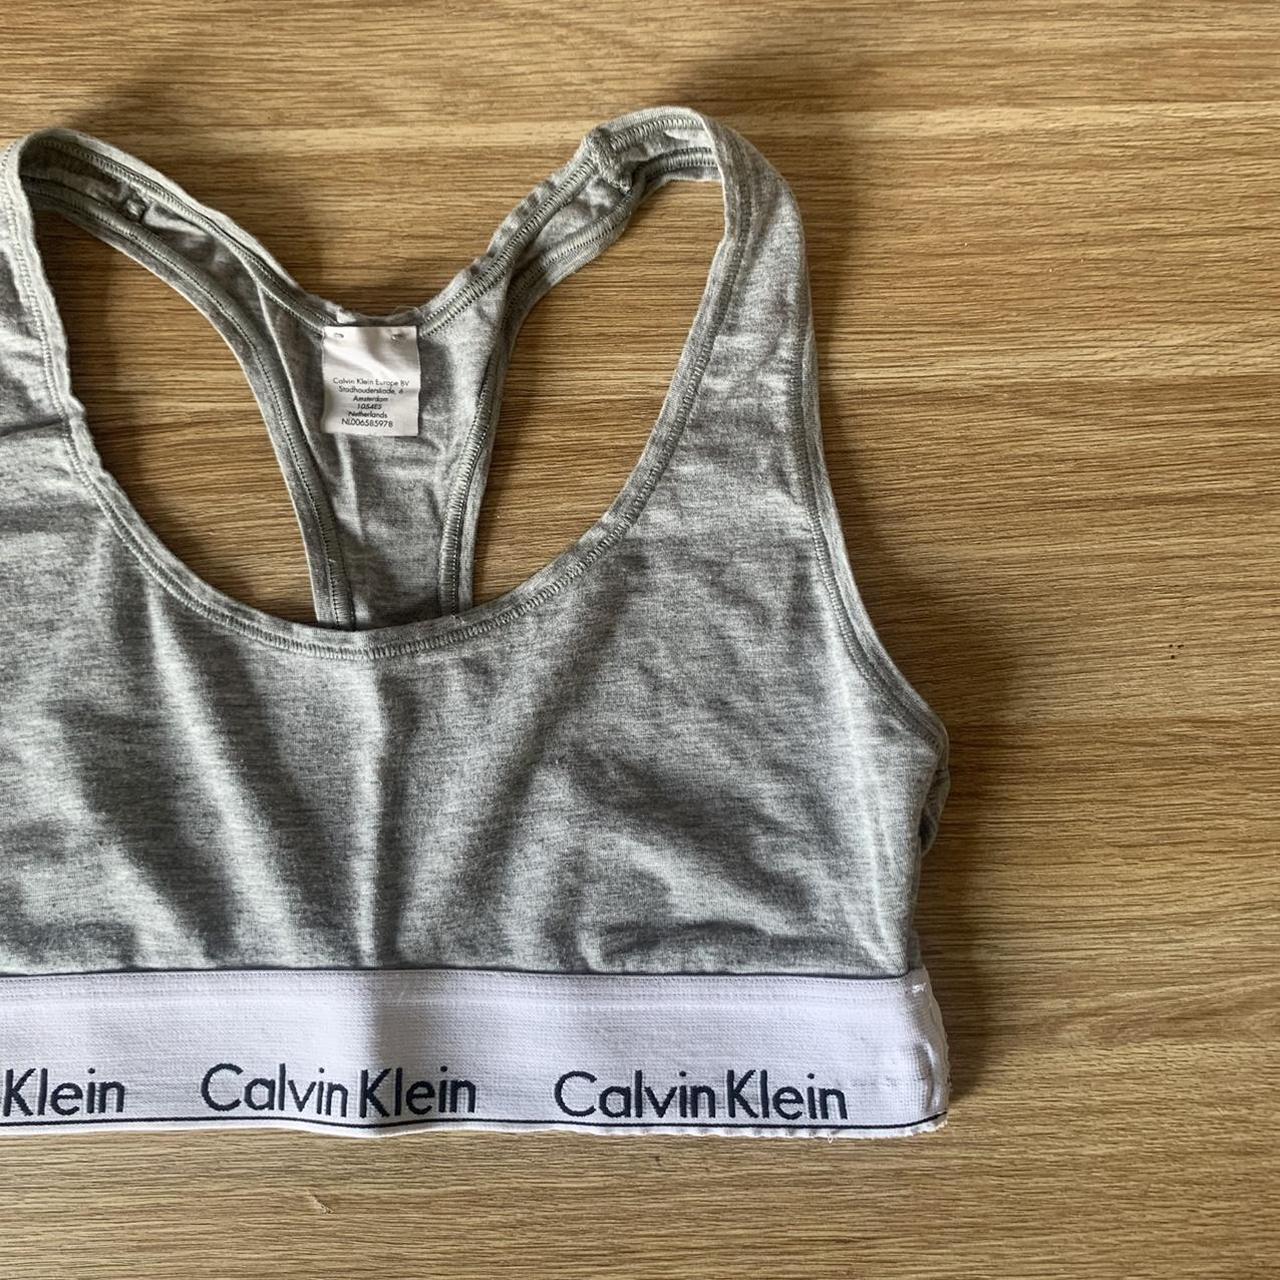 Calvin Klein grey sports bra size small excellent - Depop